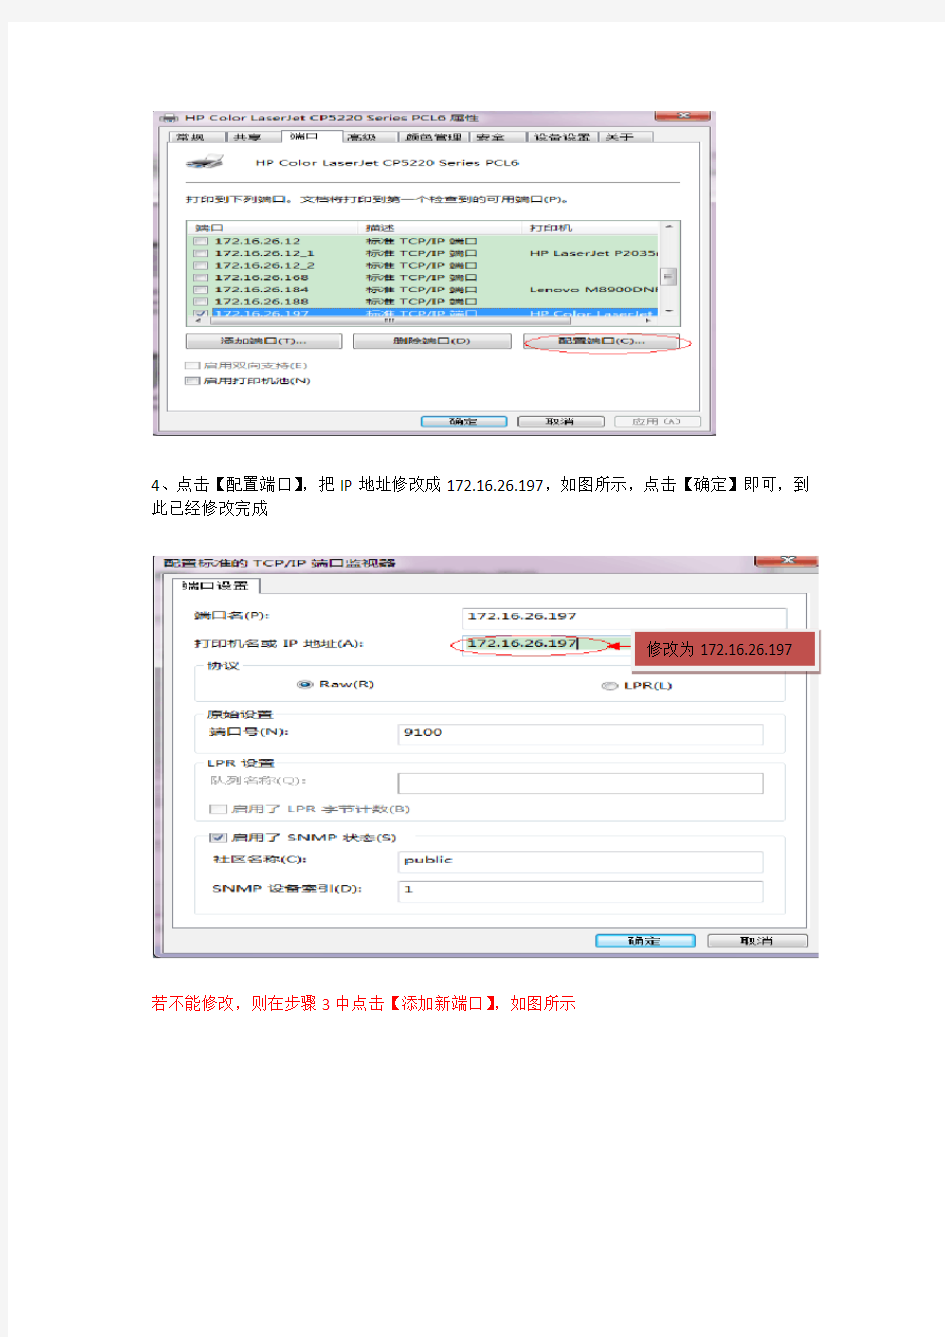 HP5225打印机ip地址修改方法(172.16.26.197)